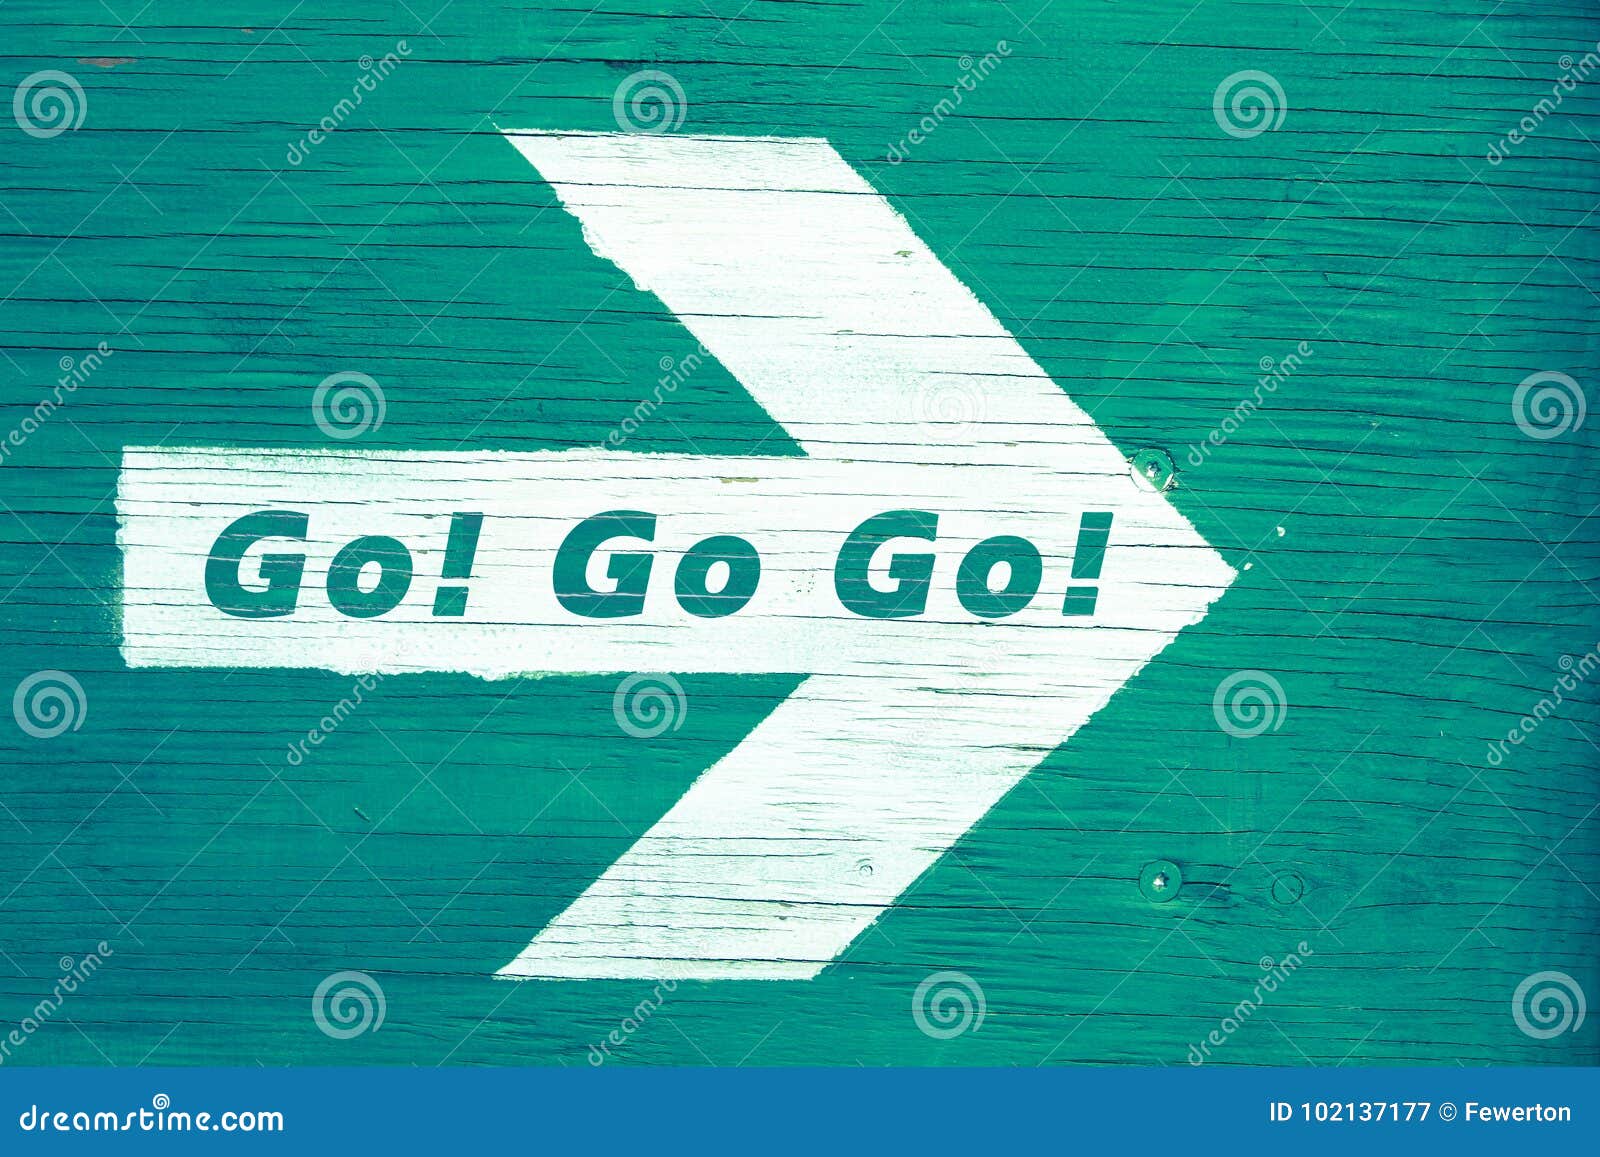 `go! go go!` text written on a white directional arrow